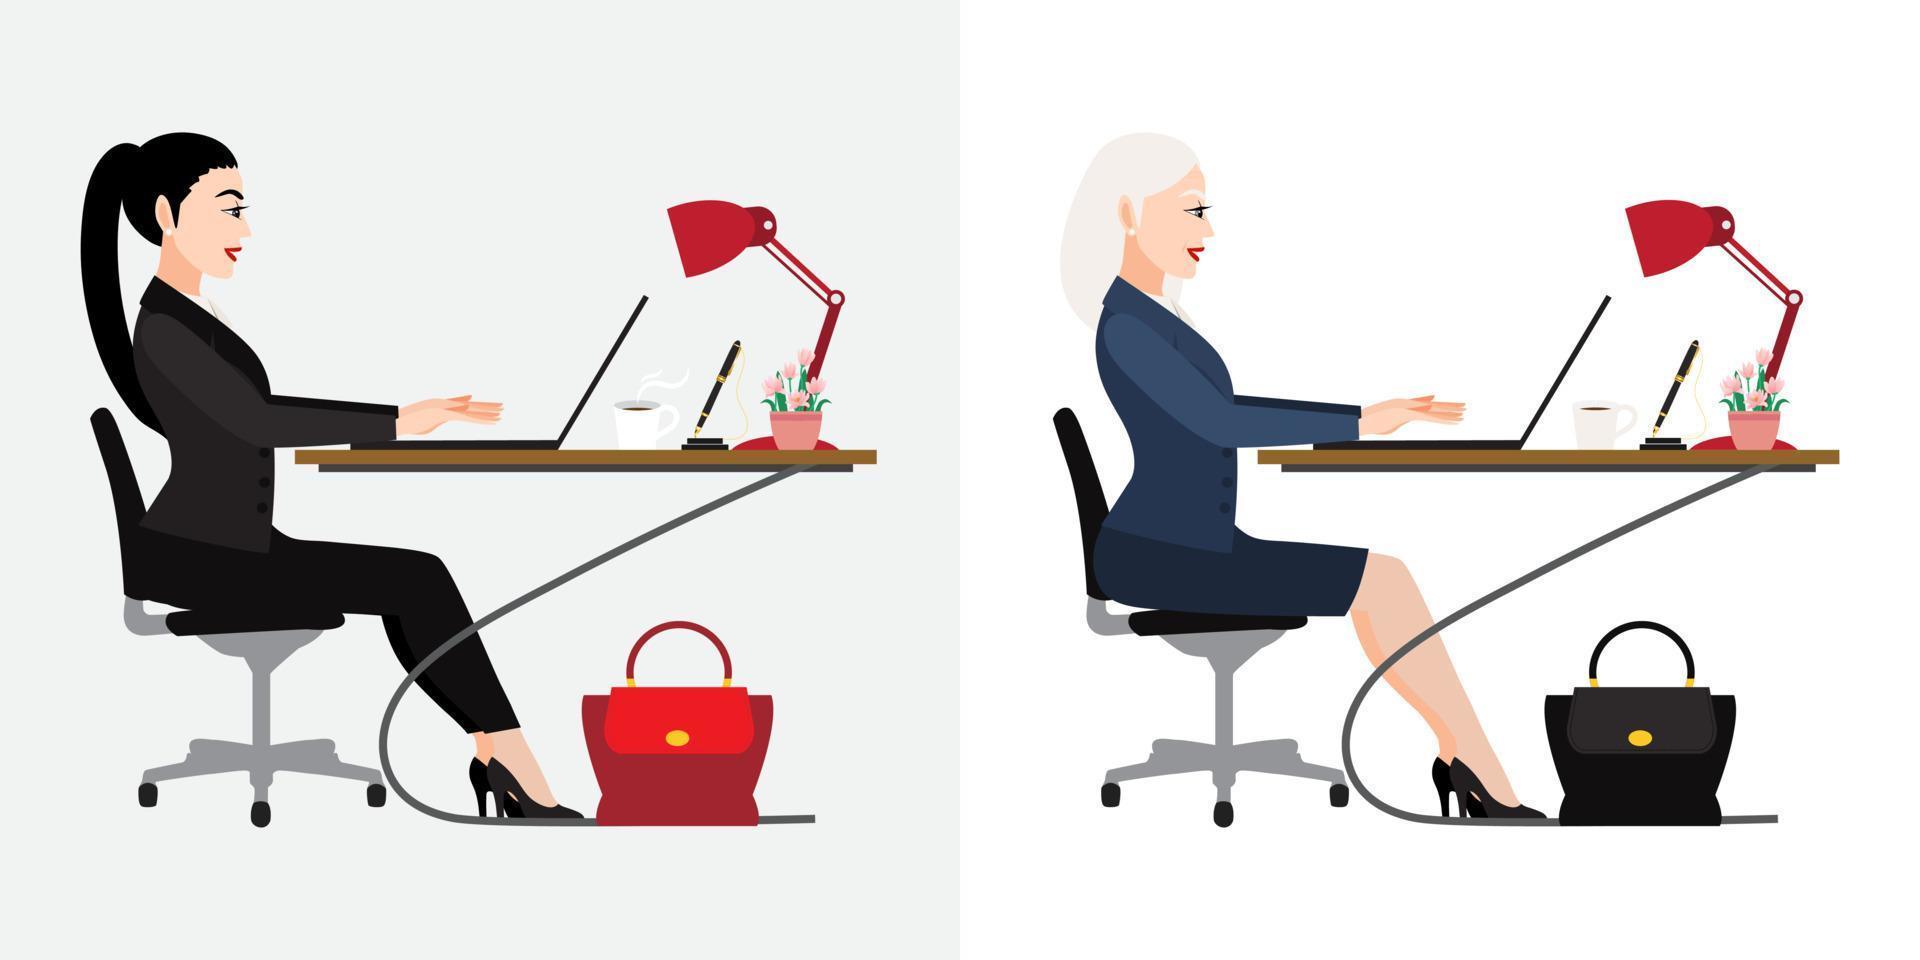 personagem de desenho animado com mesa de empresários em fundo branco, ilustração vetorial vetor